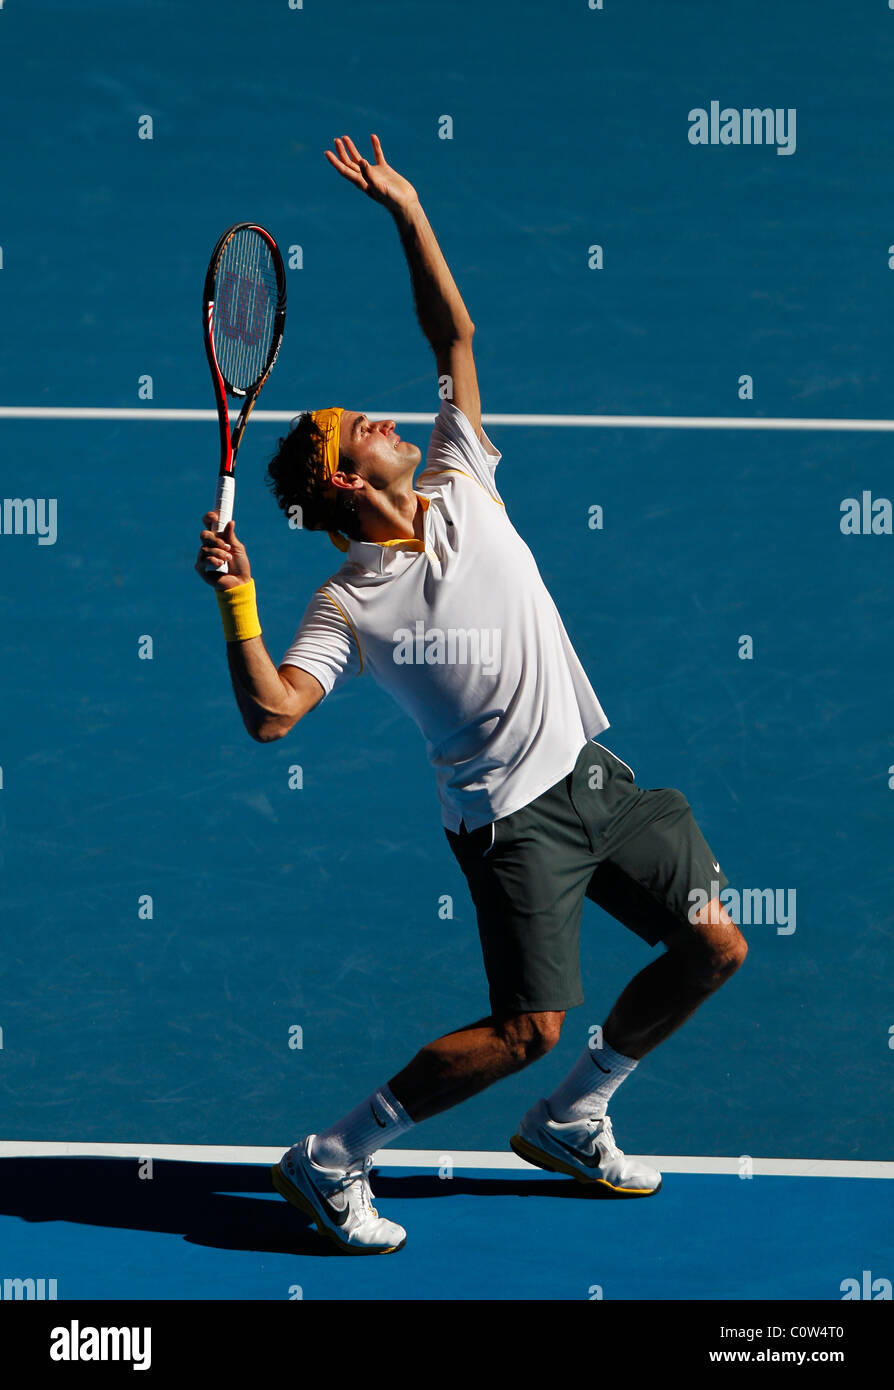 Roger Federer der Schweiz auf die Australian Open 2011-Tennis-Turnier  Stockfotografie - Alamy